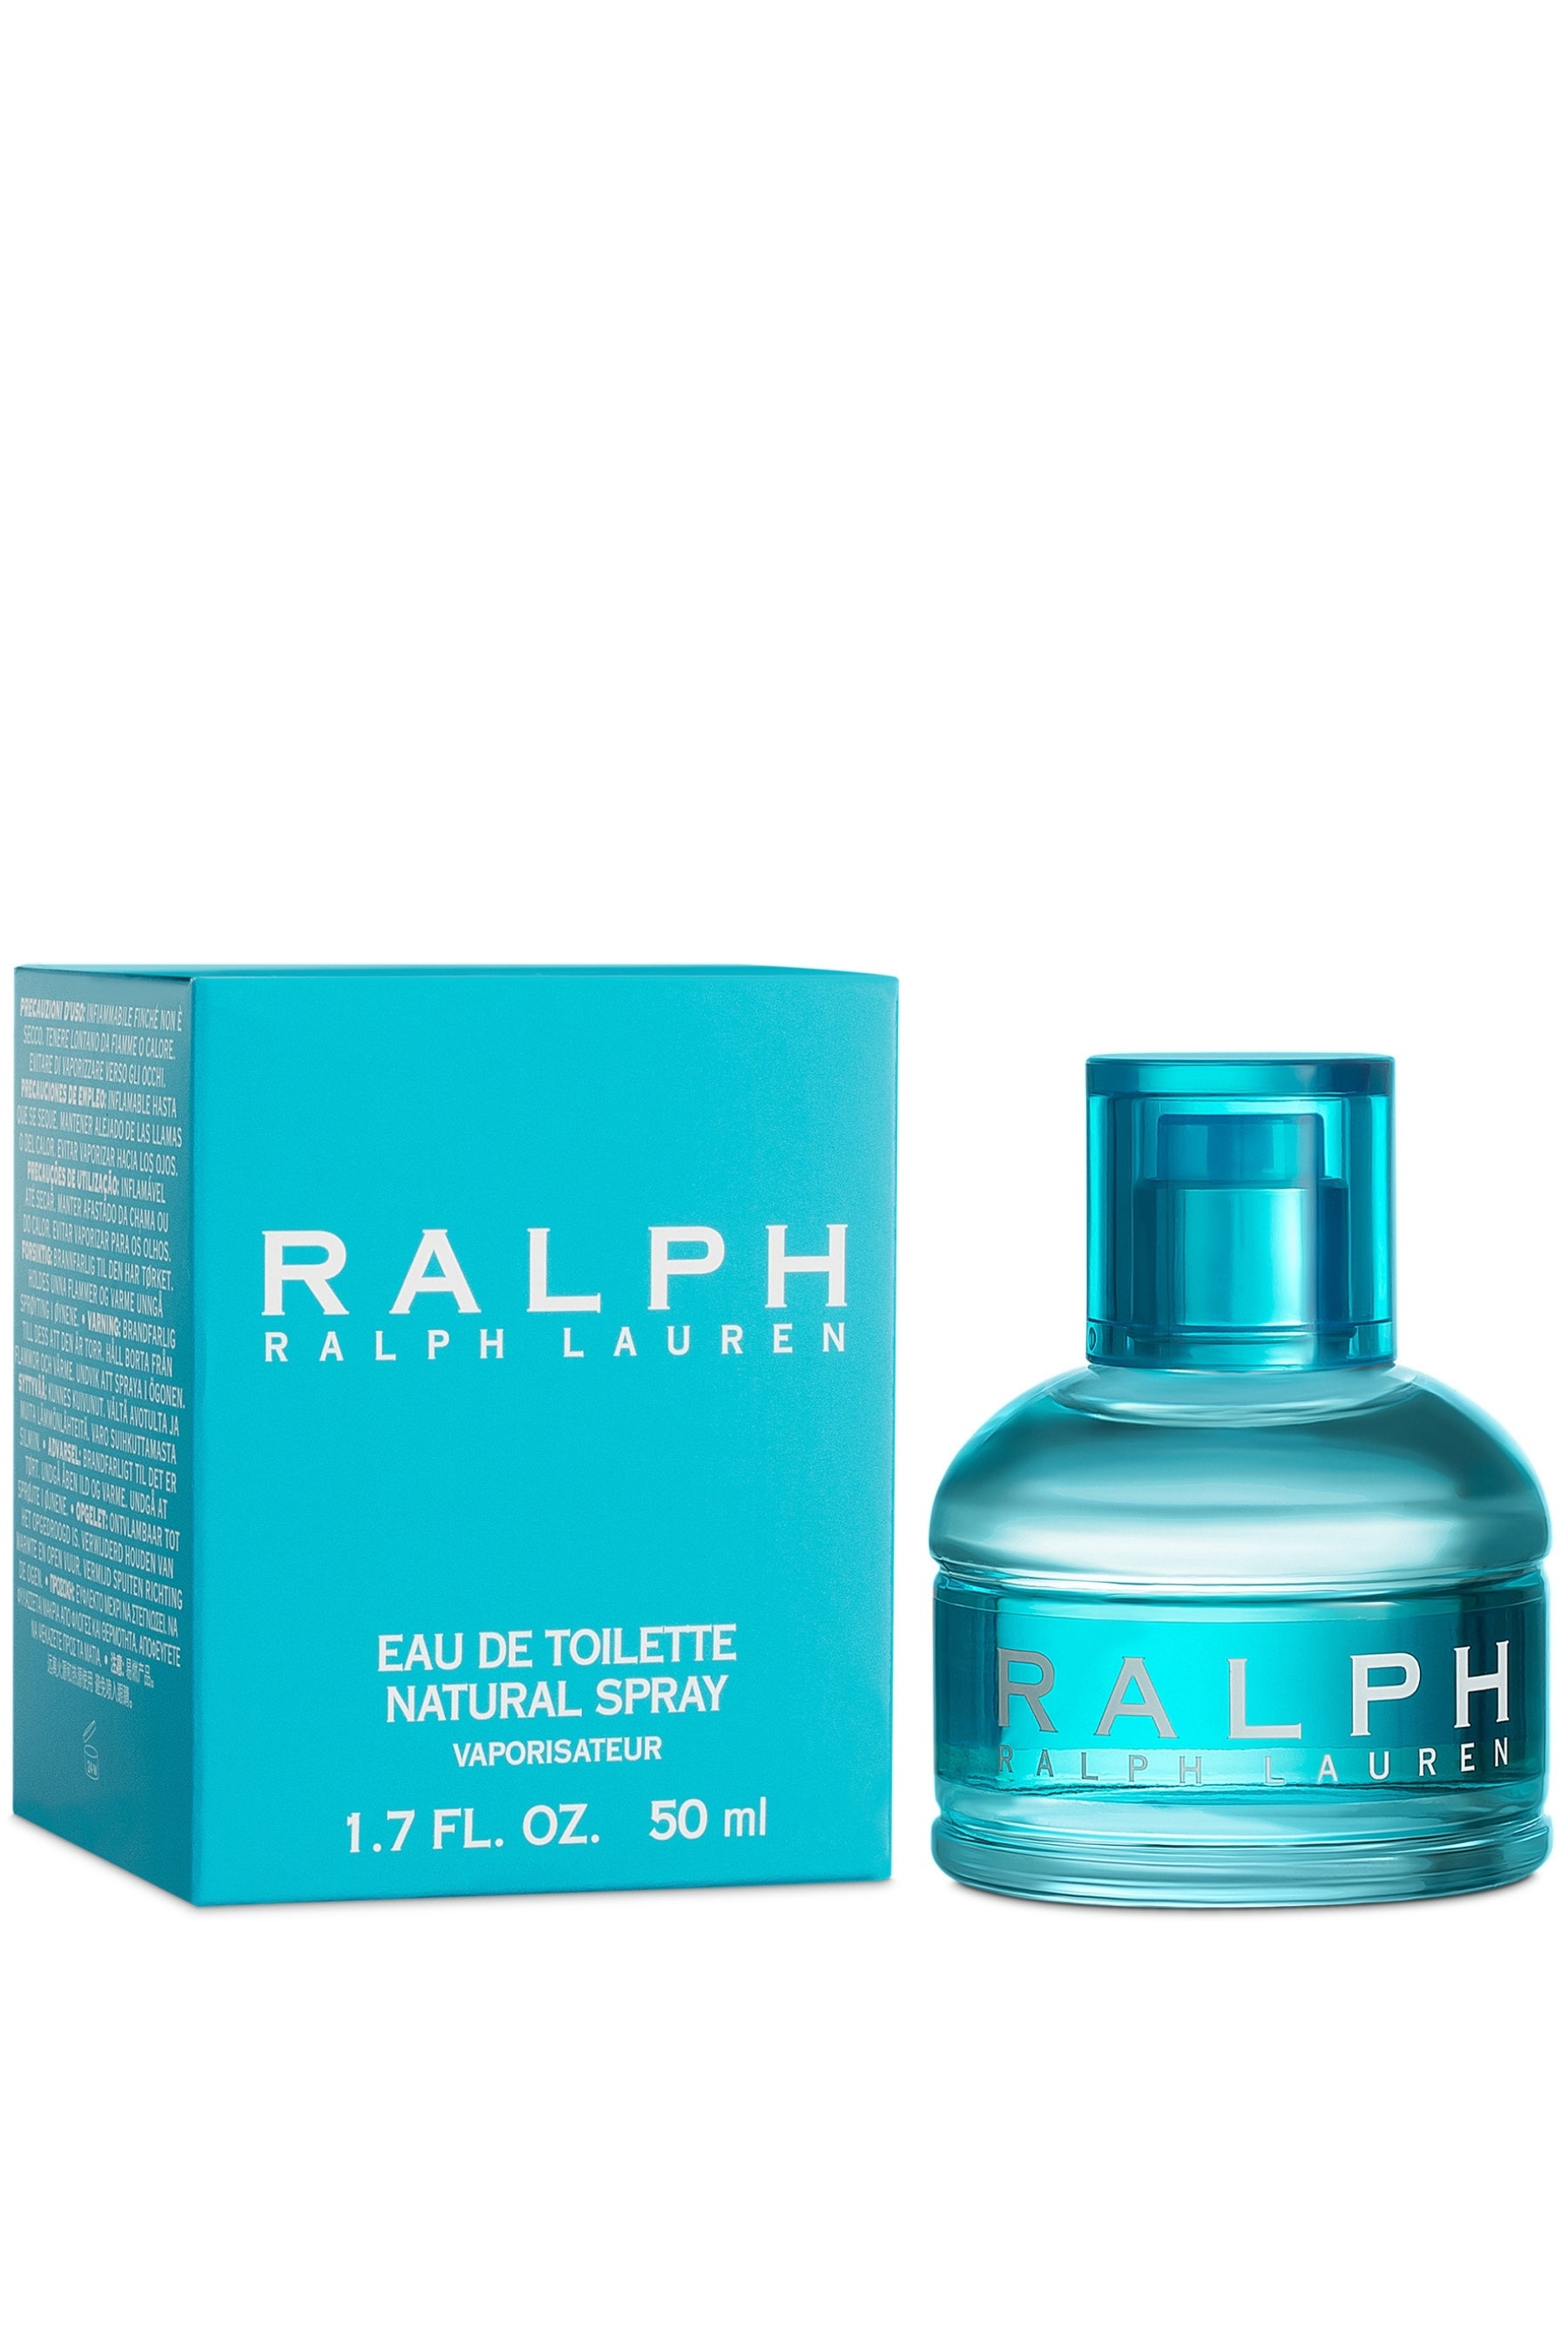 Ralph Lauren Ralph Eau de Toilette 100ml (3.4fl oz)